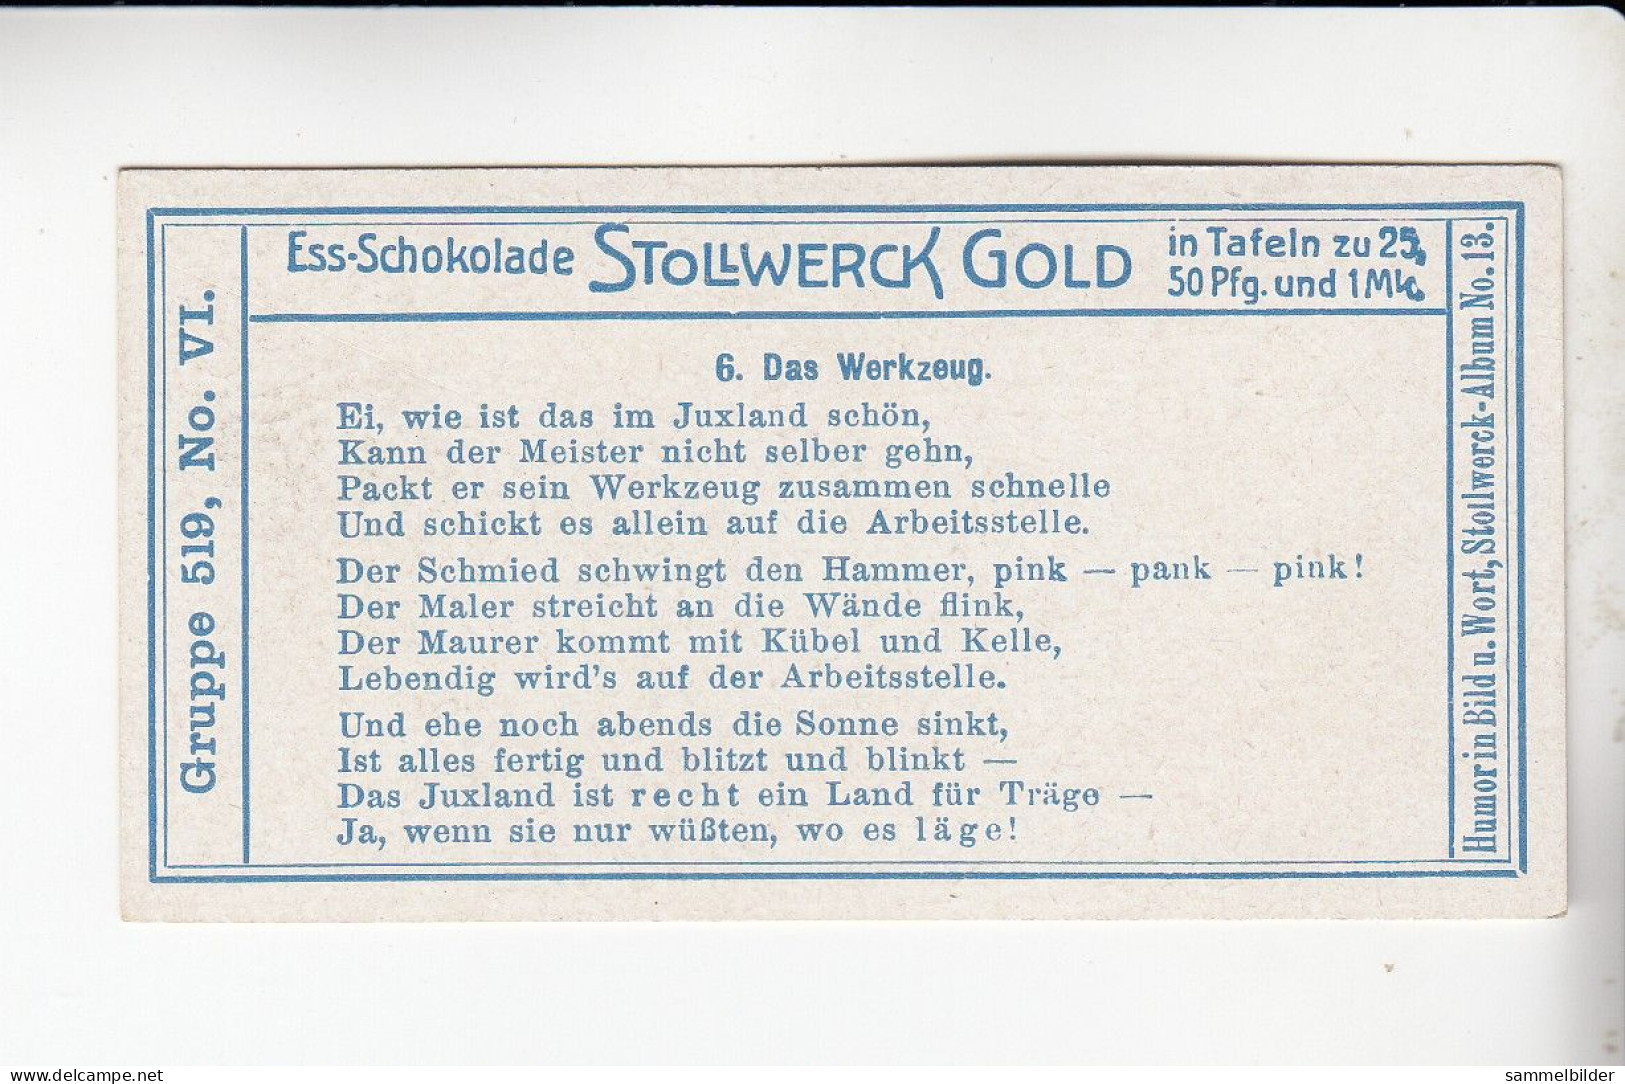 Stollwerck Album No 13 Jux   Das Werkzeug      Grp 519 #6 Von 1912 - Stollwerck